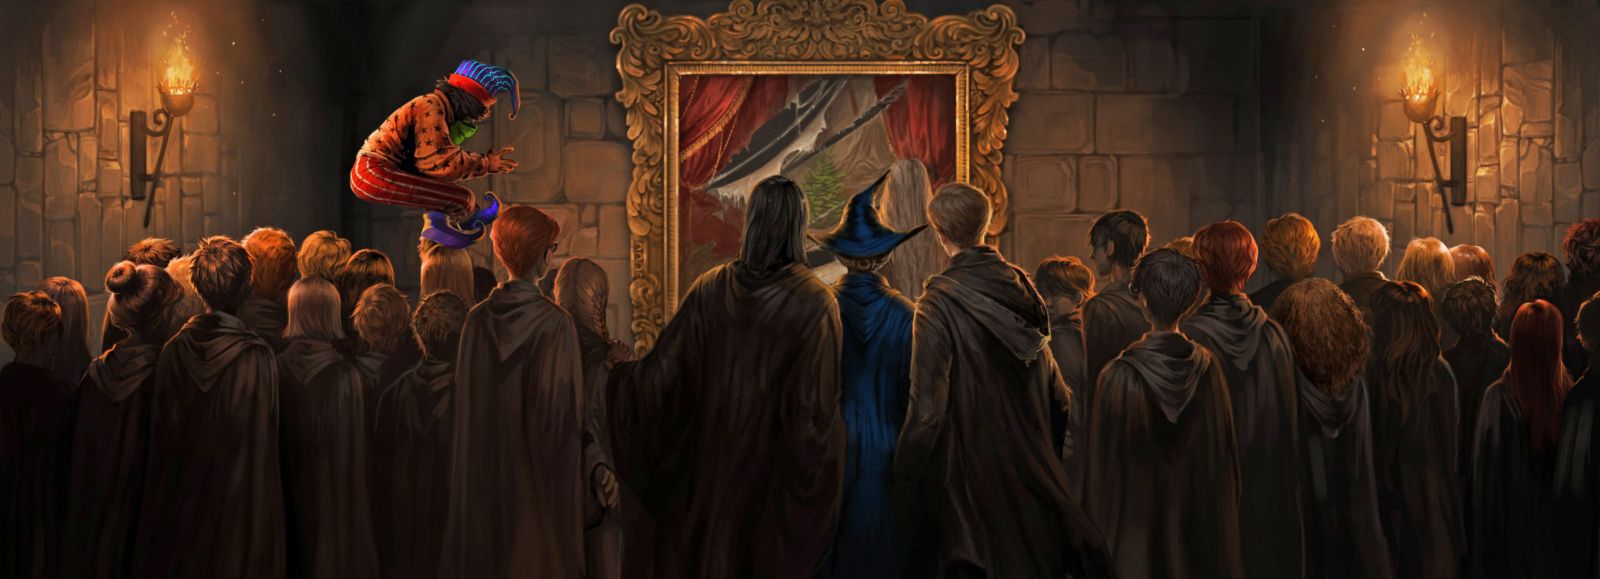 Zloduch pred chrabromilskou klubovňou, keď z obrazu zmizla Tučná pani (Väzeň z Azkabanu).